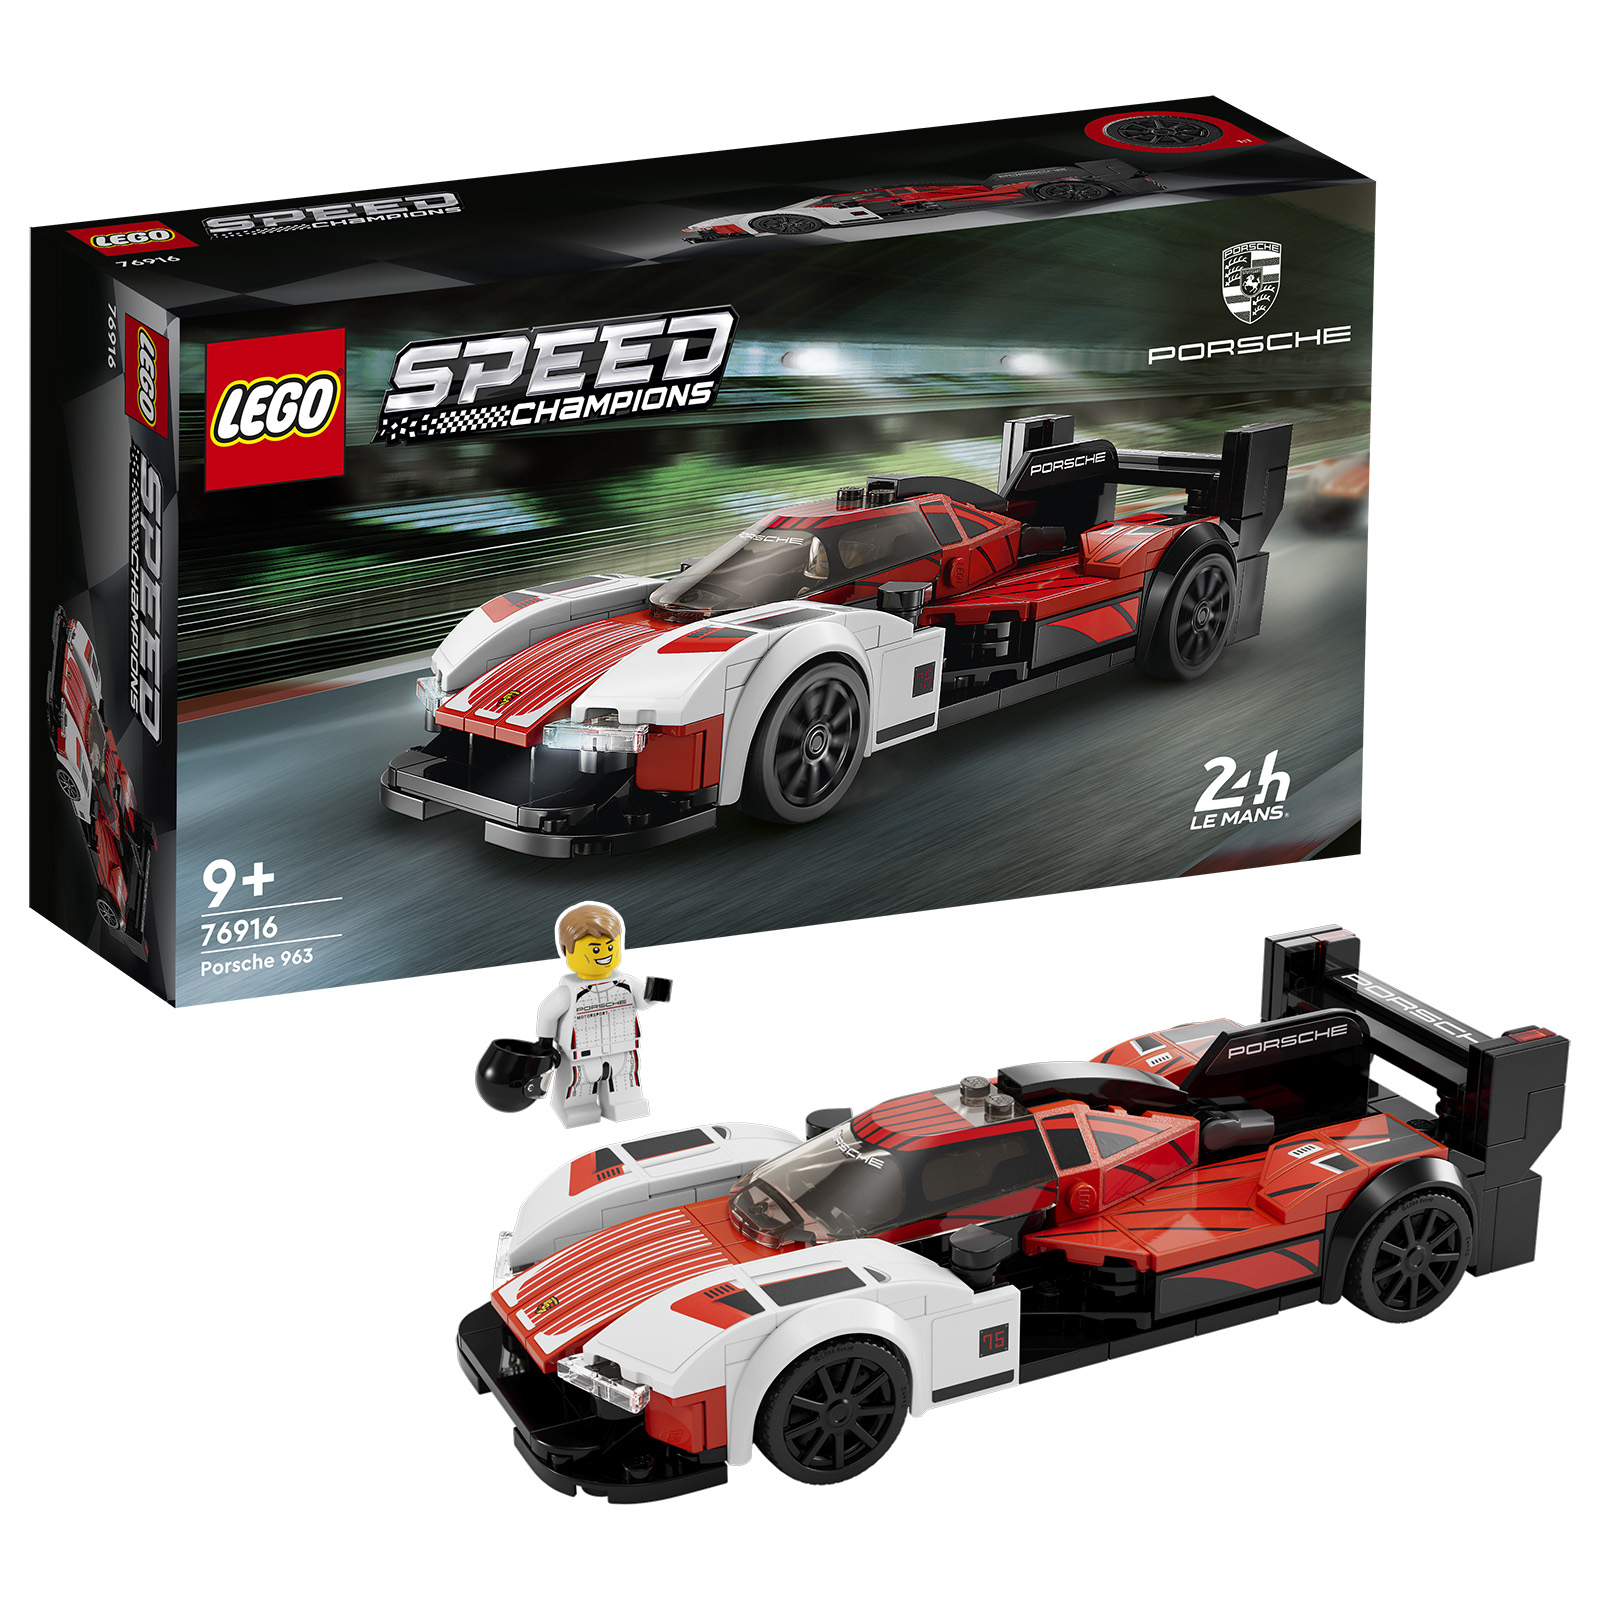 Ferrari, Porsche Featured in New Lego Speed Champions Sets